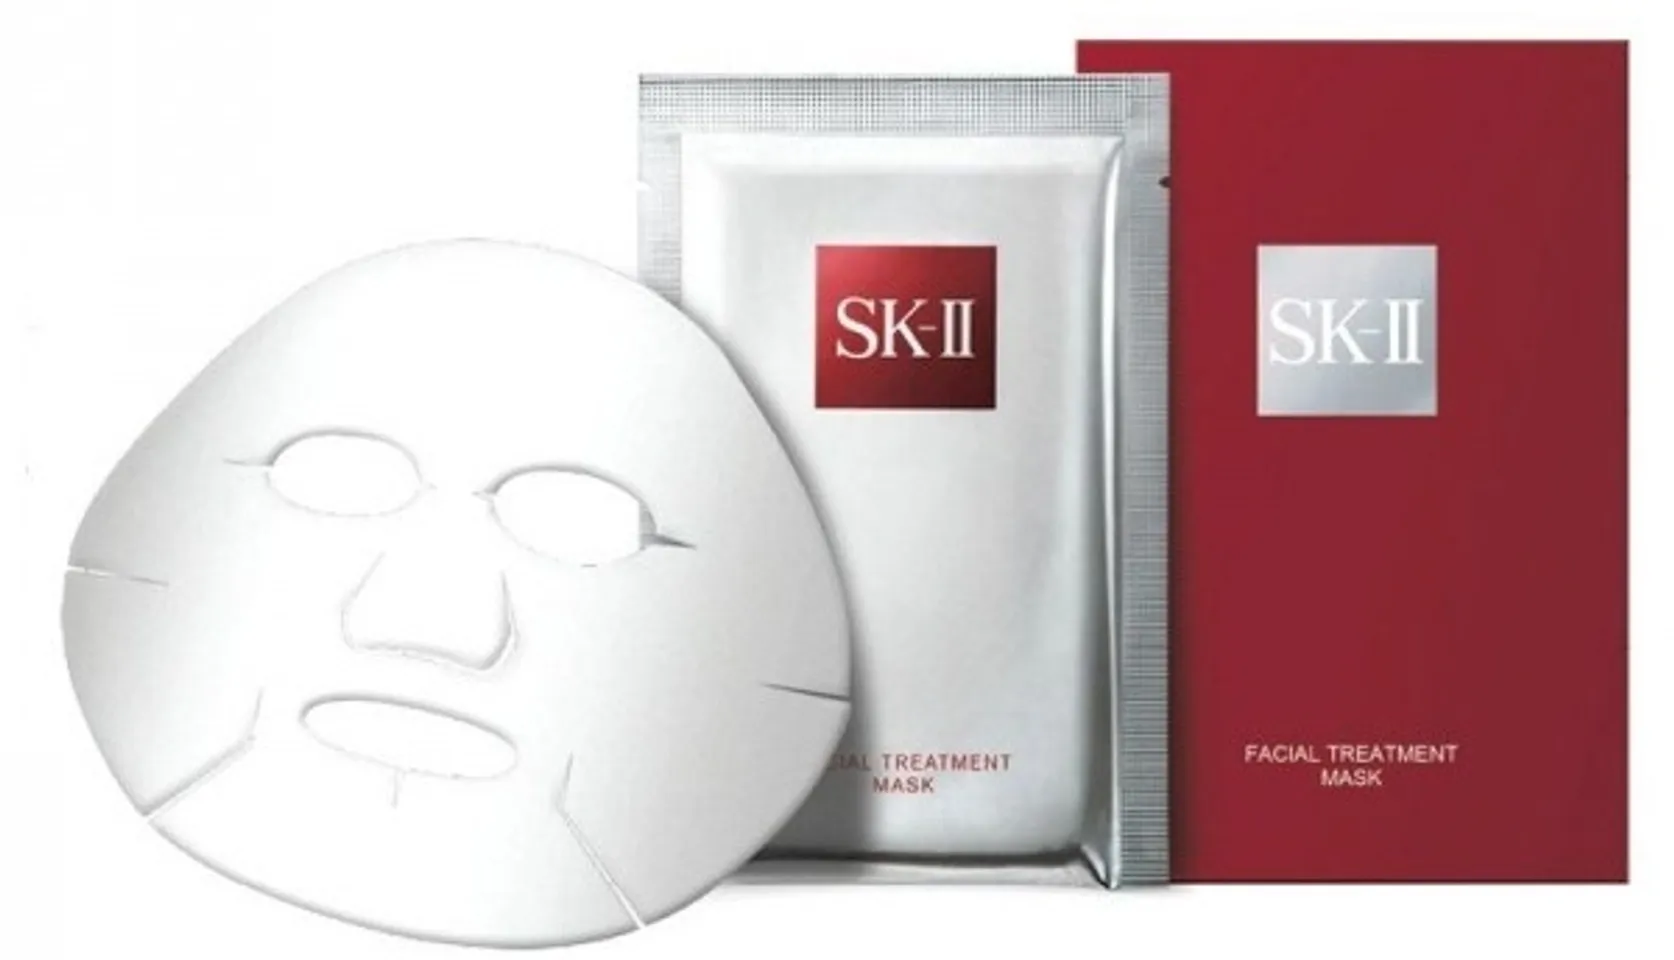 Mặt nạ SK II Facial Treatment Mask với hàm lượng tinh chất Pitera cao giúp dưỡng ẩm hiệu quả cho làn da